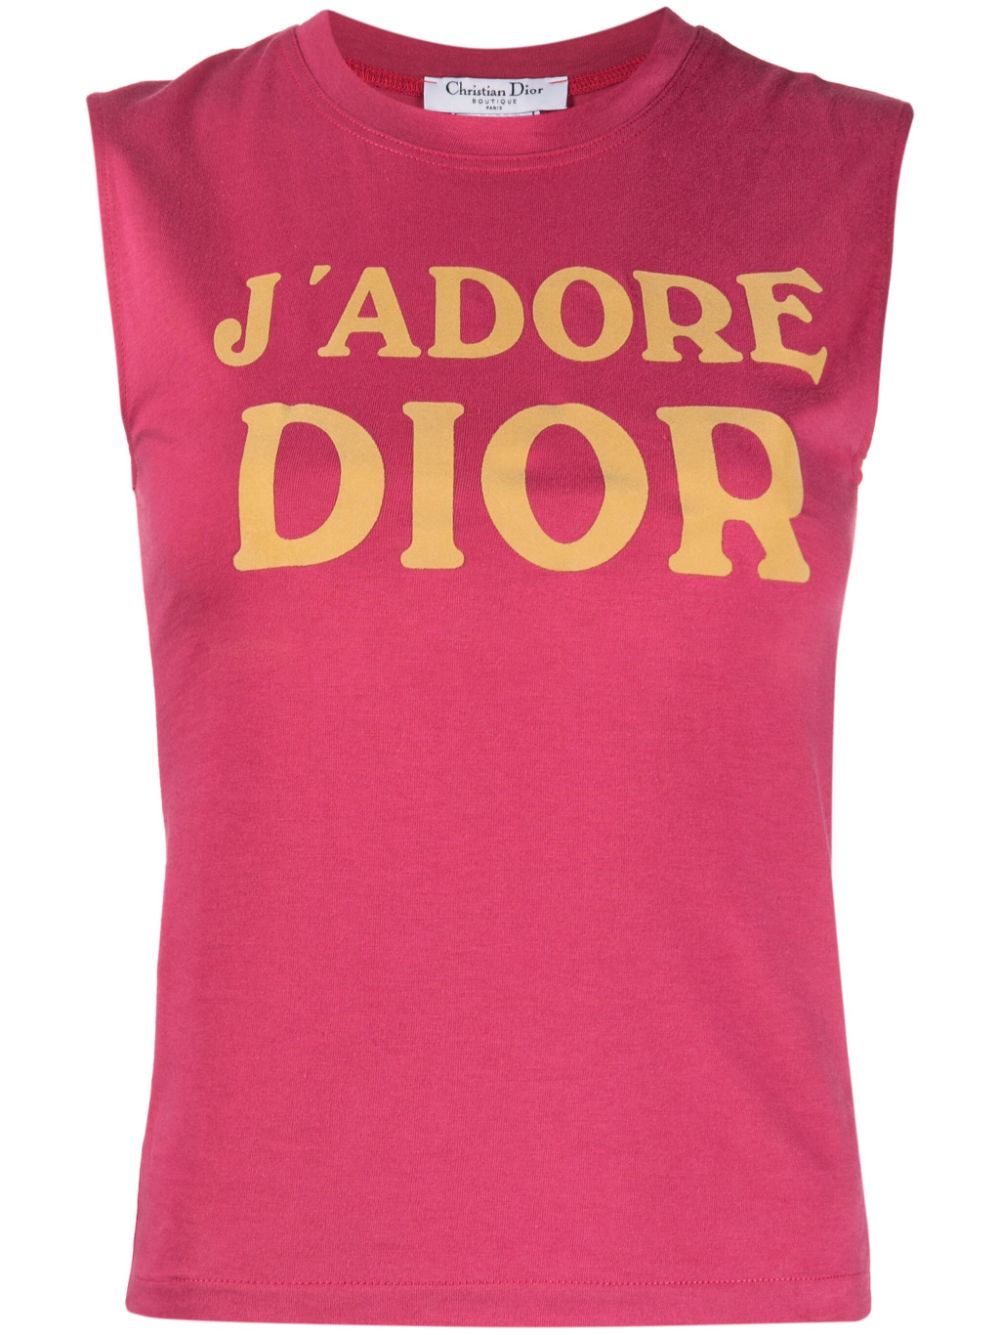 2002 J'Adore Dior cotton top